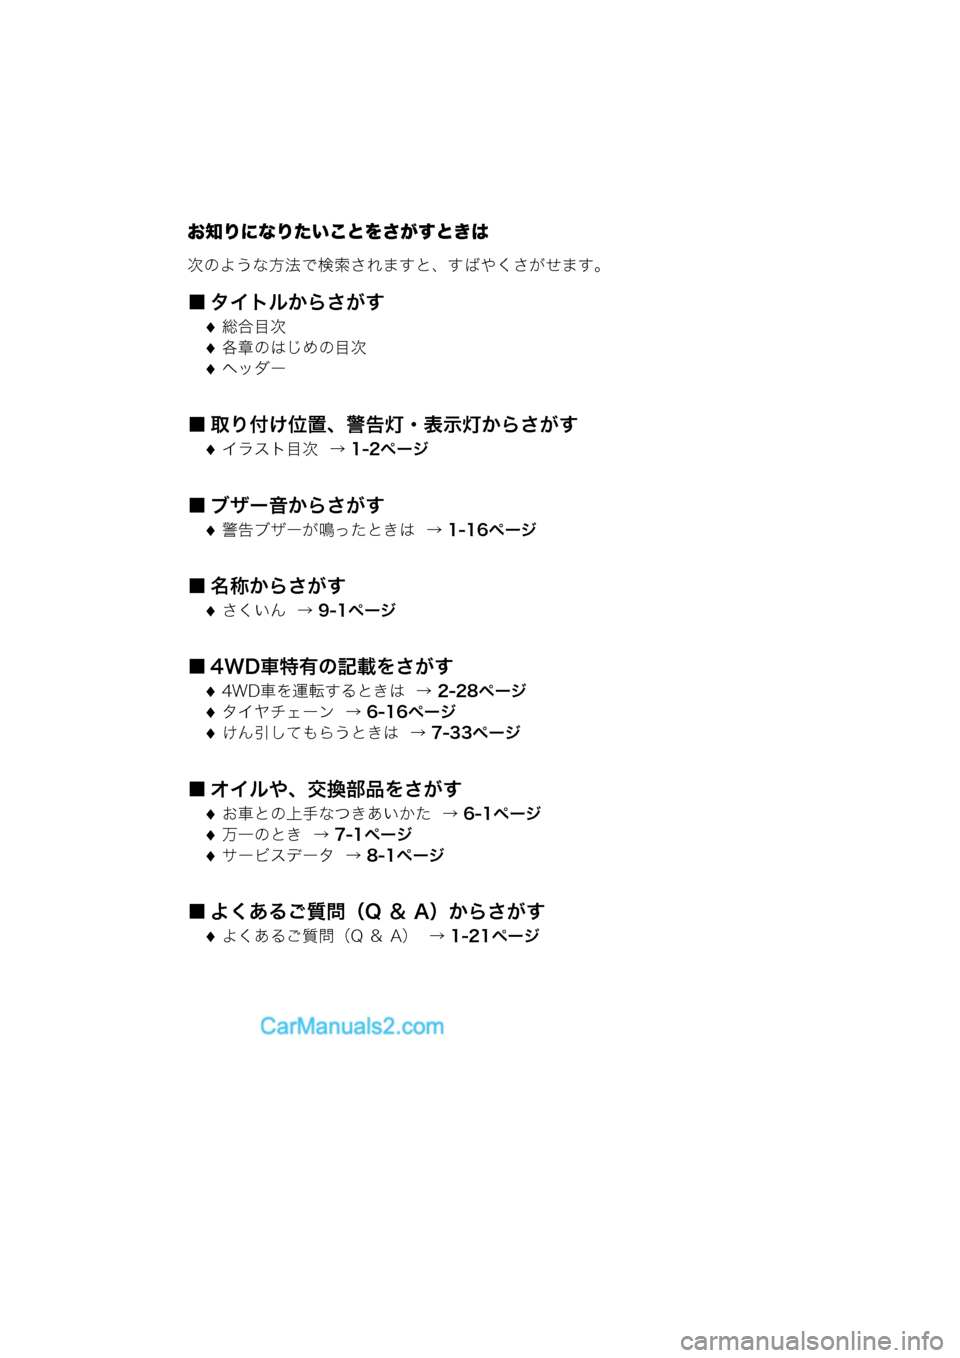 MAZDA MODEL CARROL 2015  取扱説明書 (キャロル) (in Japanese) お知りになりたいことをさがすときは
次のような方法で検索されますと、すばやくさがせます。
■ タイトルからさがす
総合目次
各章のはじめ